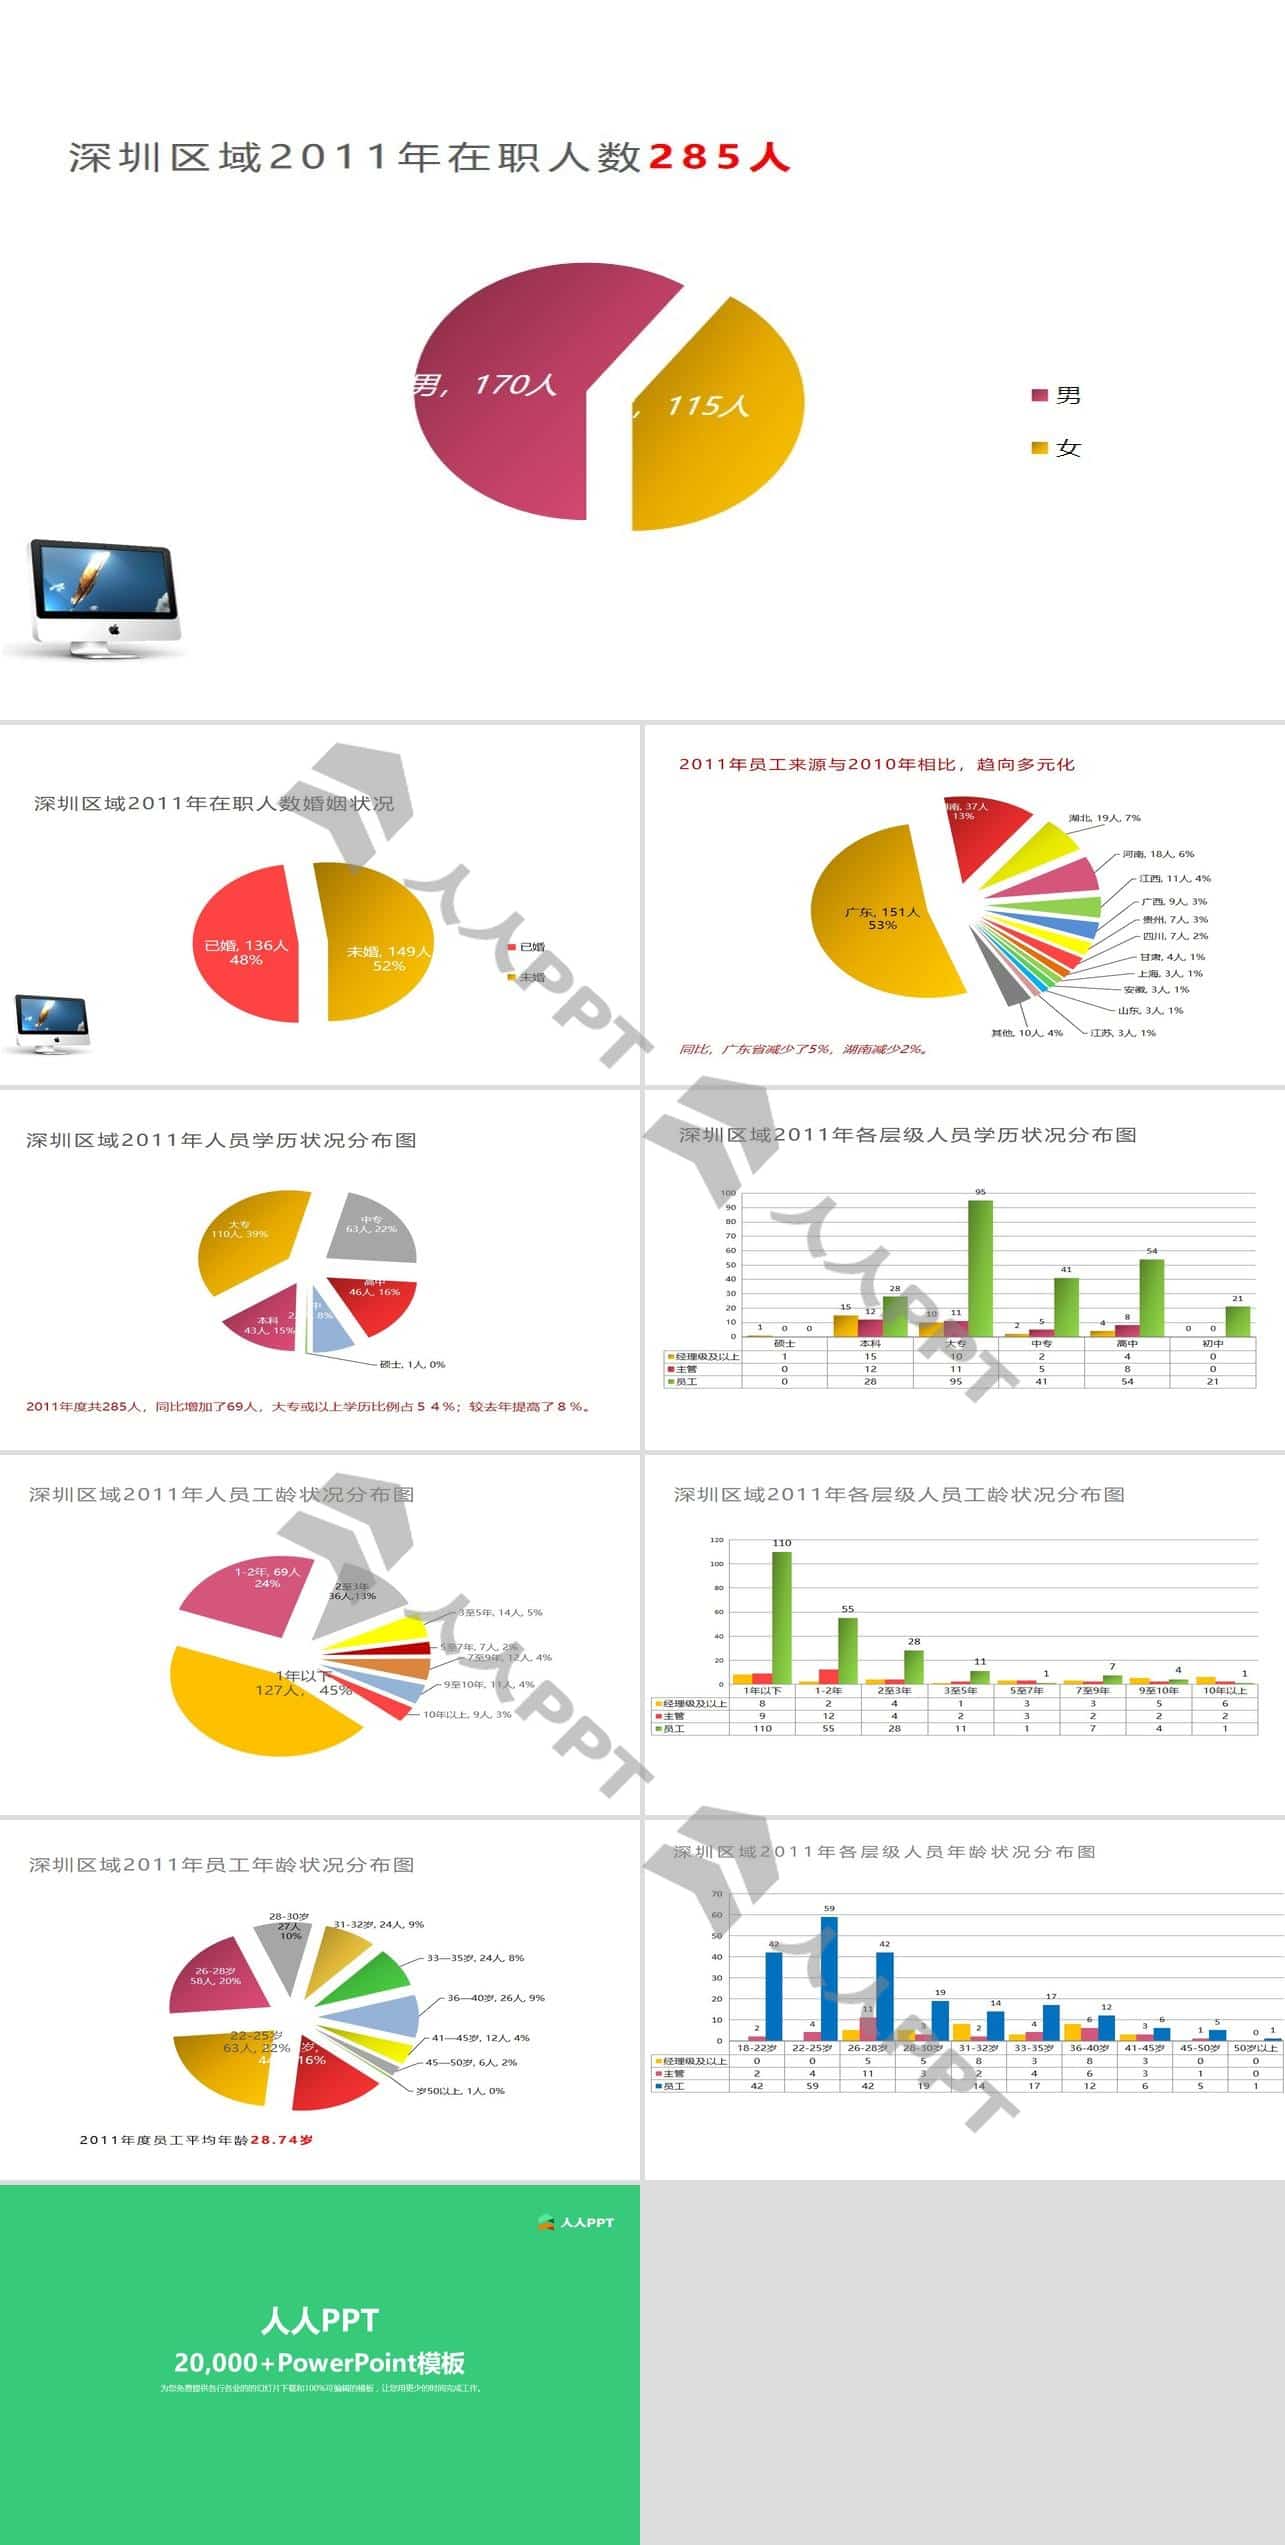 深圳地区在职人员结构状况分析图PPT模板长图